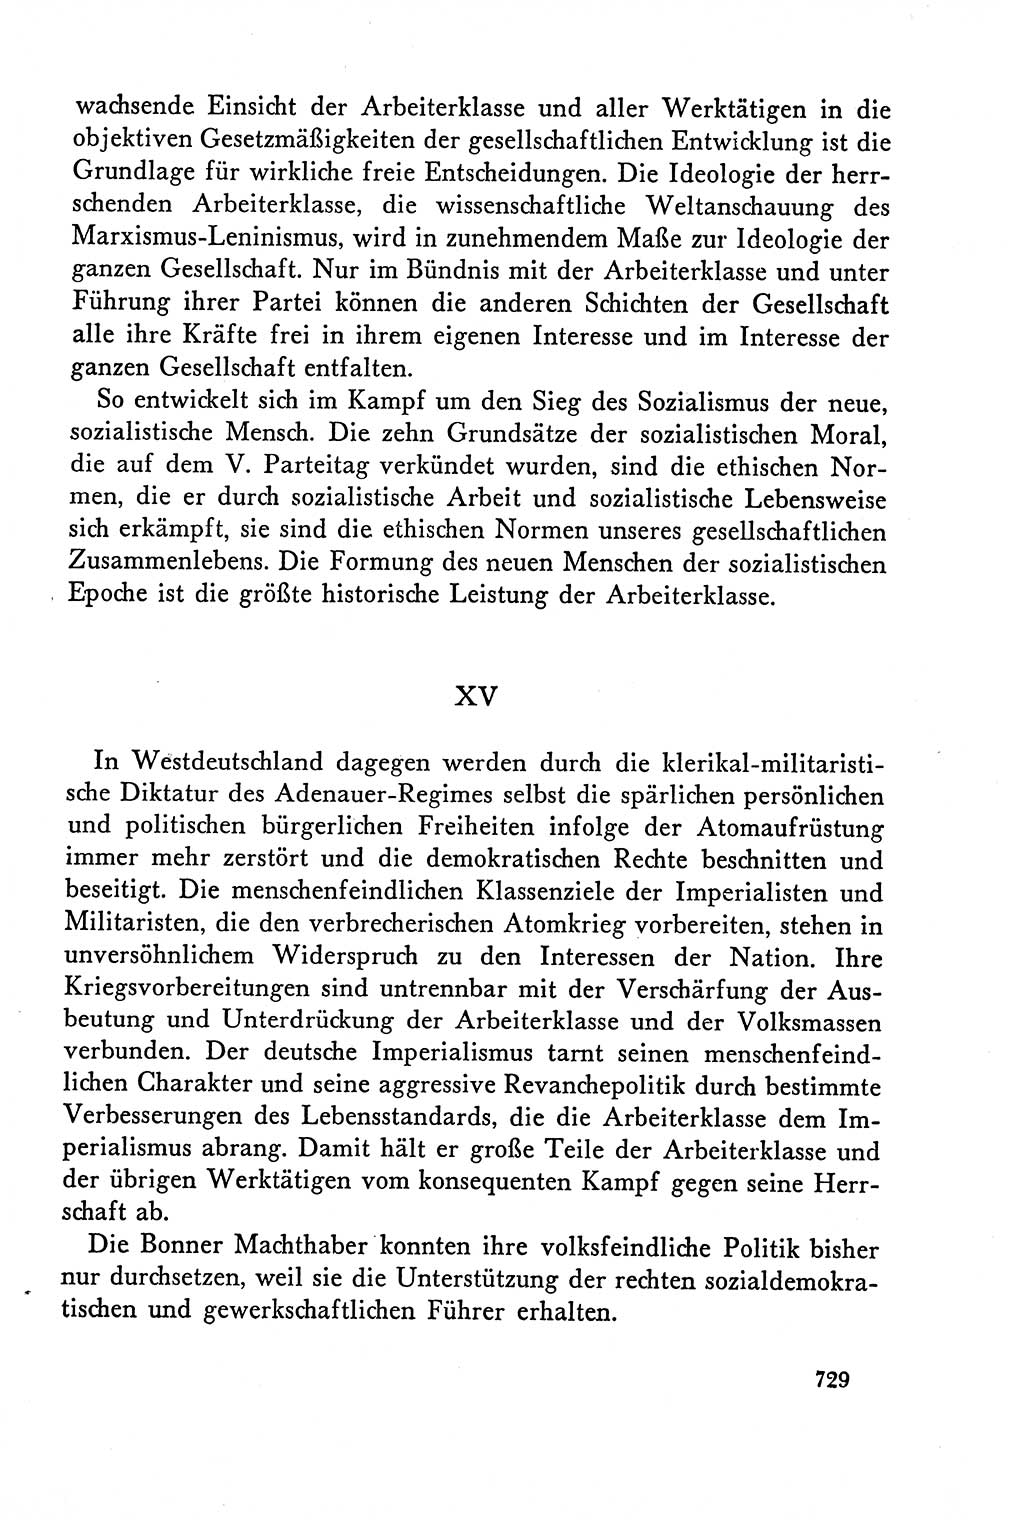 Dokumente der Sozialistischen Einheitspartei Deutschlands (SED) [Deutsche Demokratische Republik (DDR)] 1958-1959, Seite 729 (Dok. SED DDR 1958-1959, S. 729)